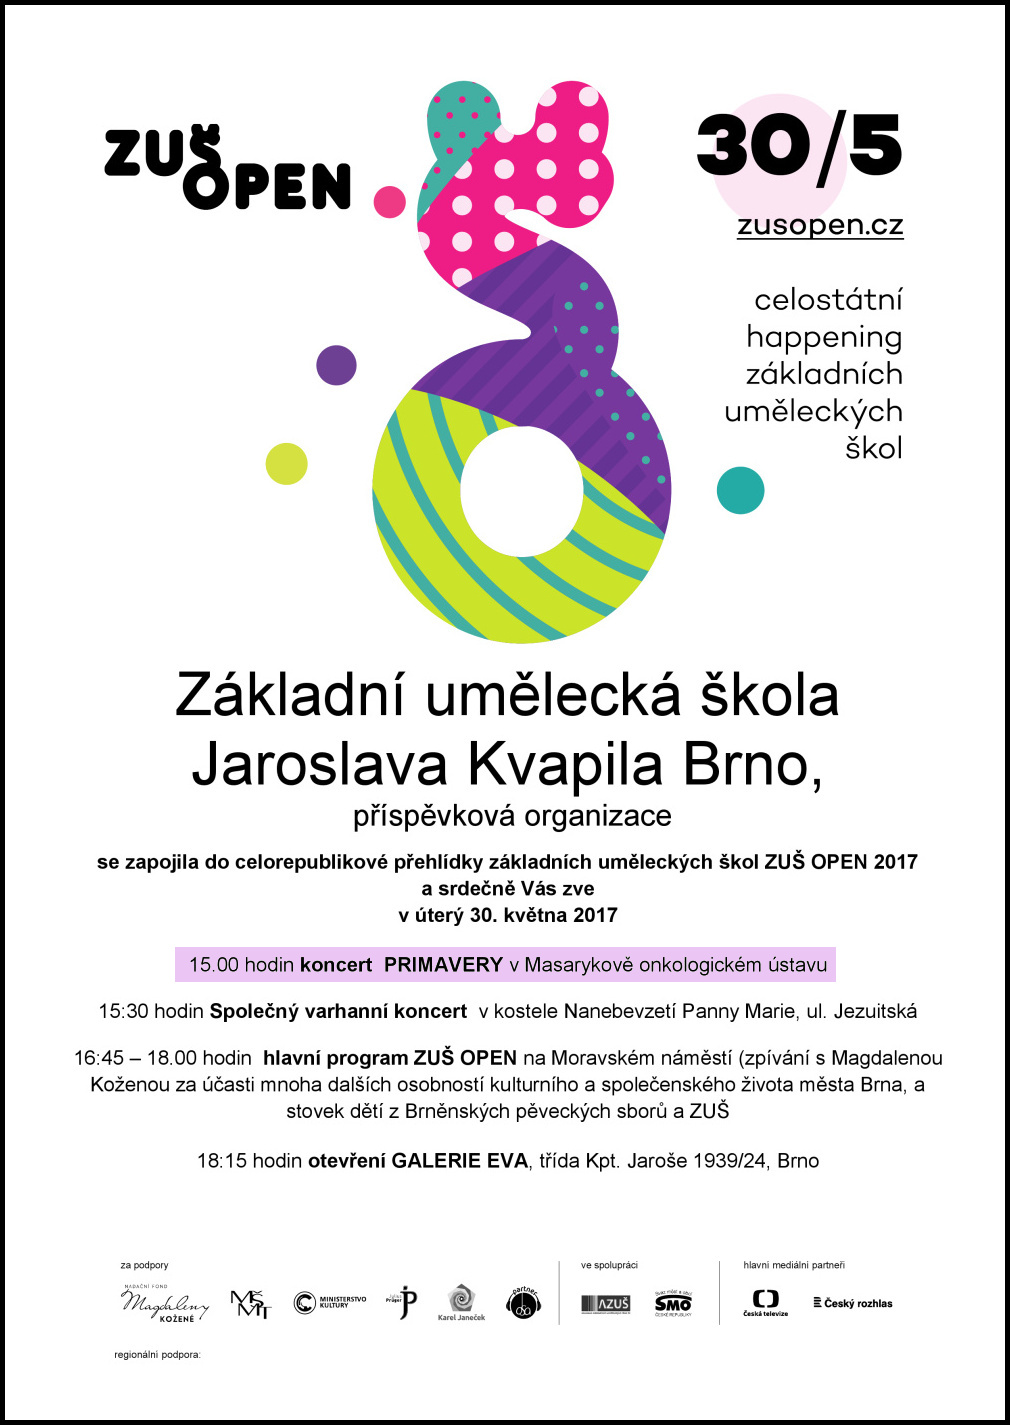 Pozvánka: ZUŠ open 2017 ‒ koncert v rámci přehlídky základních uměleckých škol